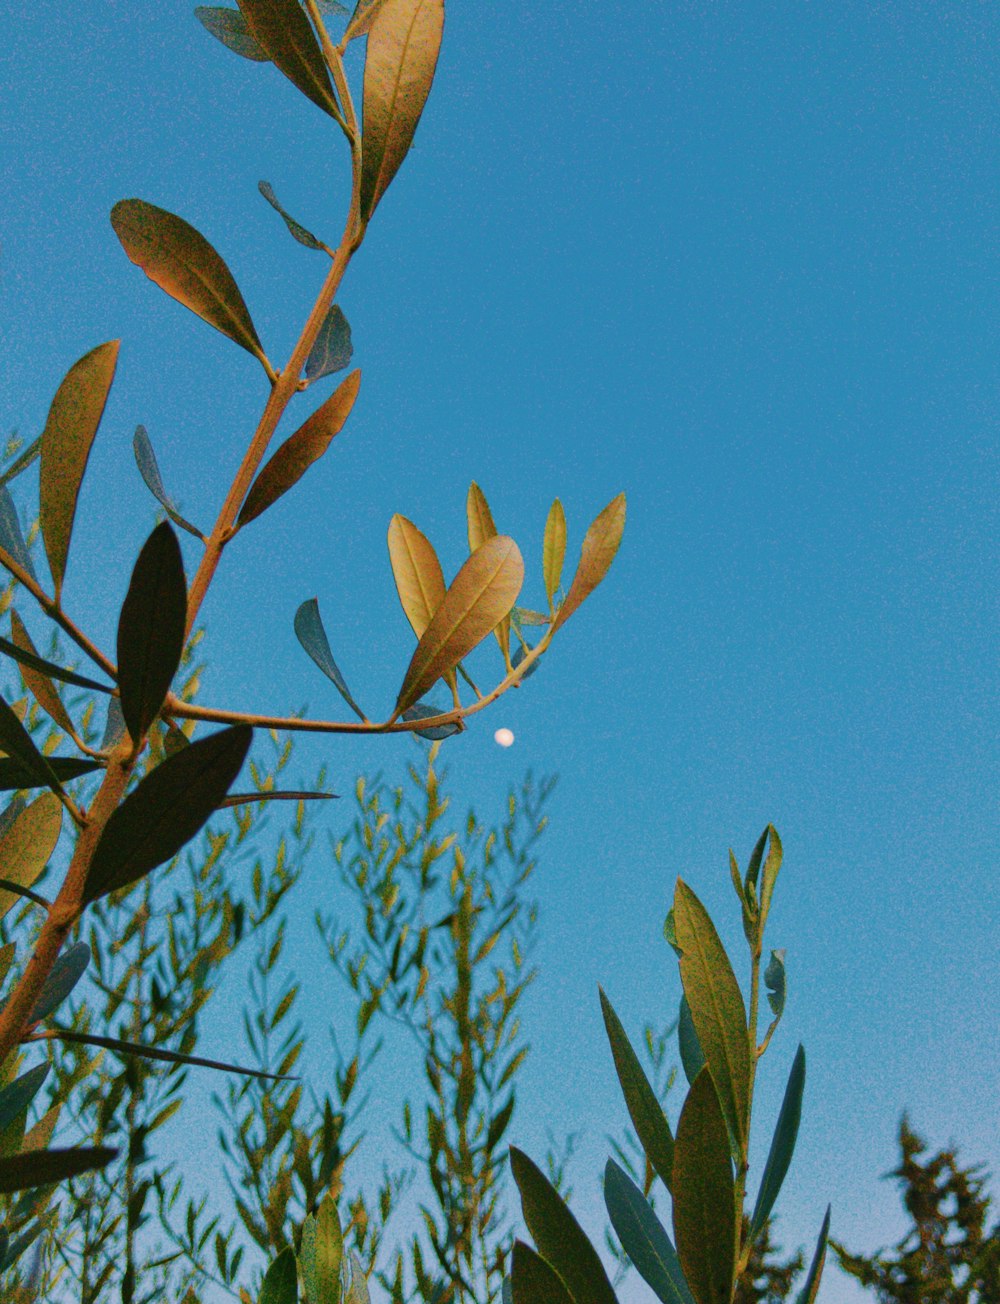 foglie verdi e marroni sotto il cielo blu durante il giorno